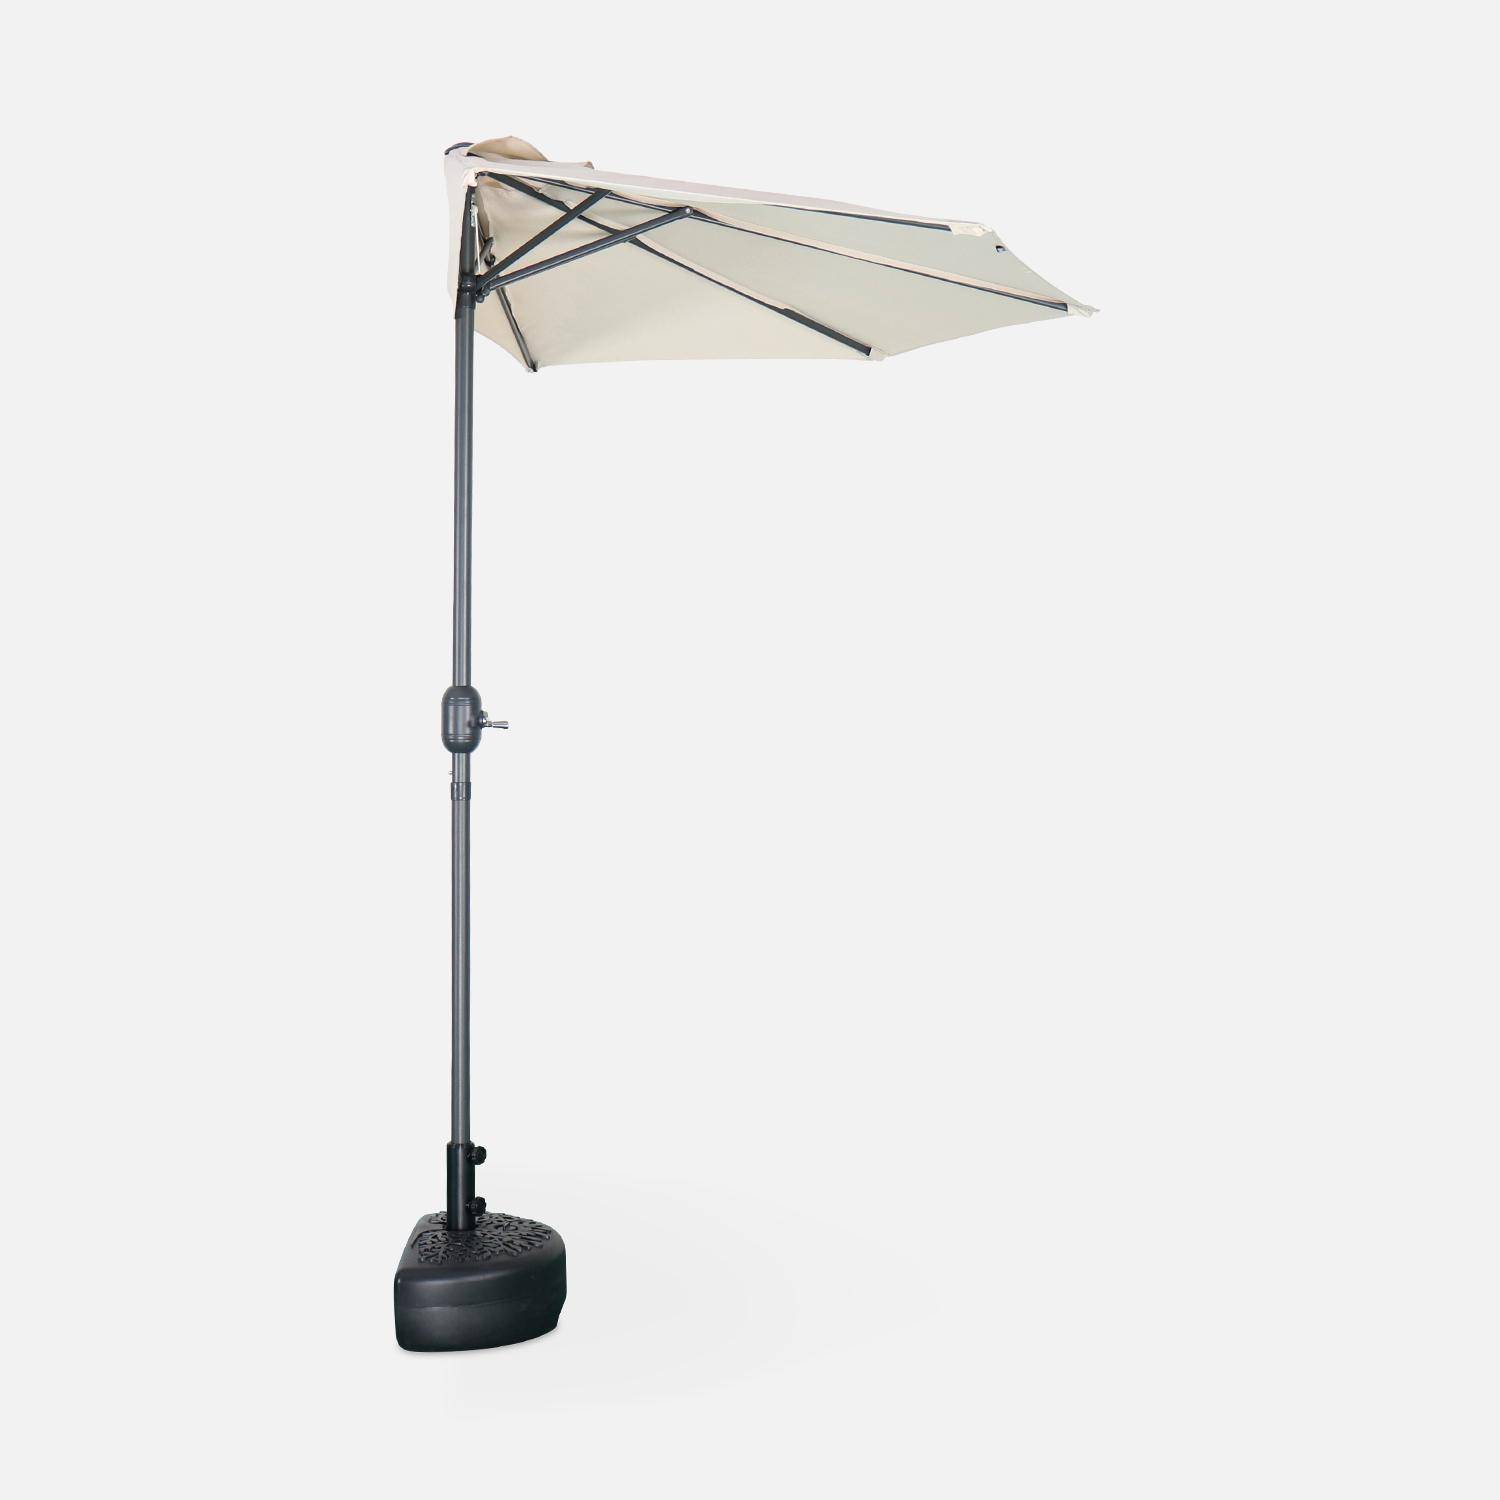 Ombrellone da balcone Ø250cm - CALVI - Mezzo ombrellone dritto, palo in alluminio con manovella, telo colore sabbia,sweeek,Photo4